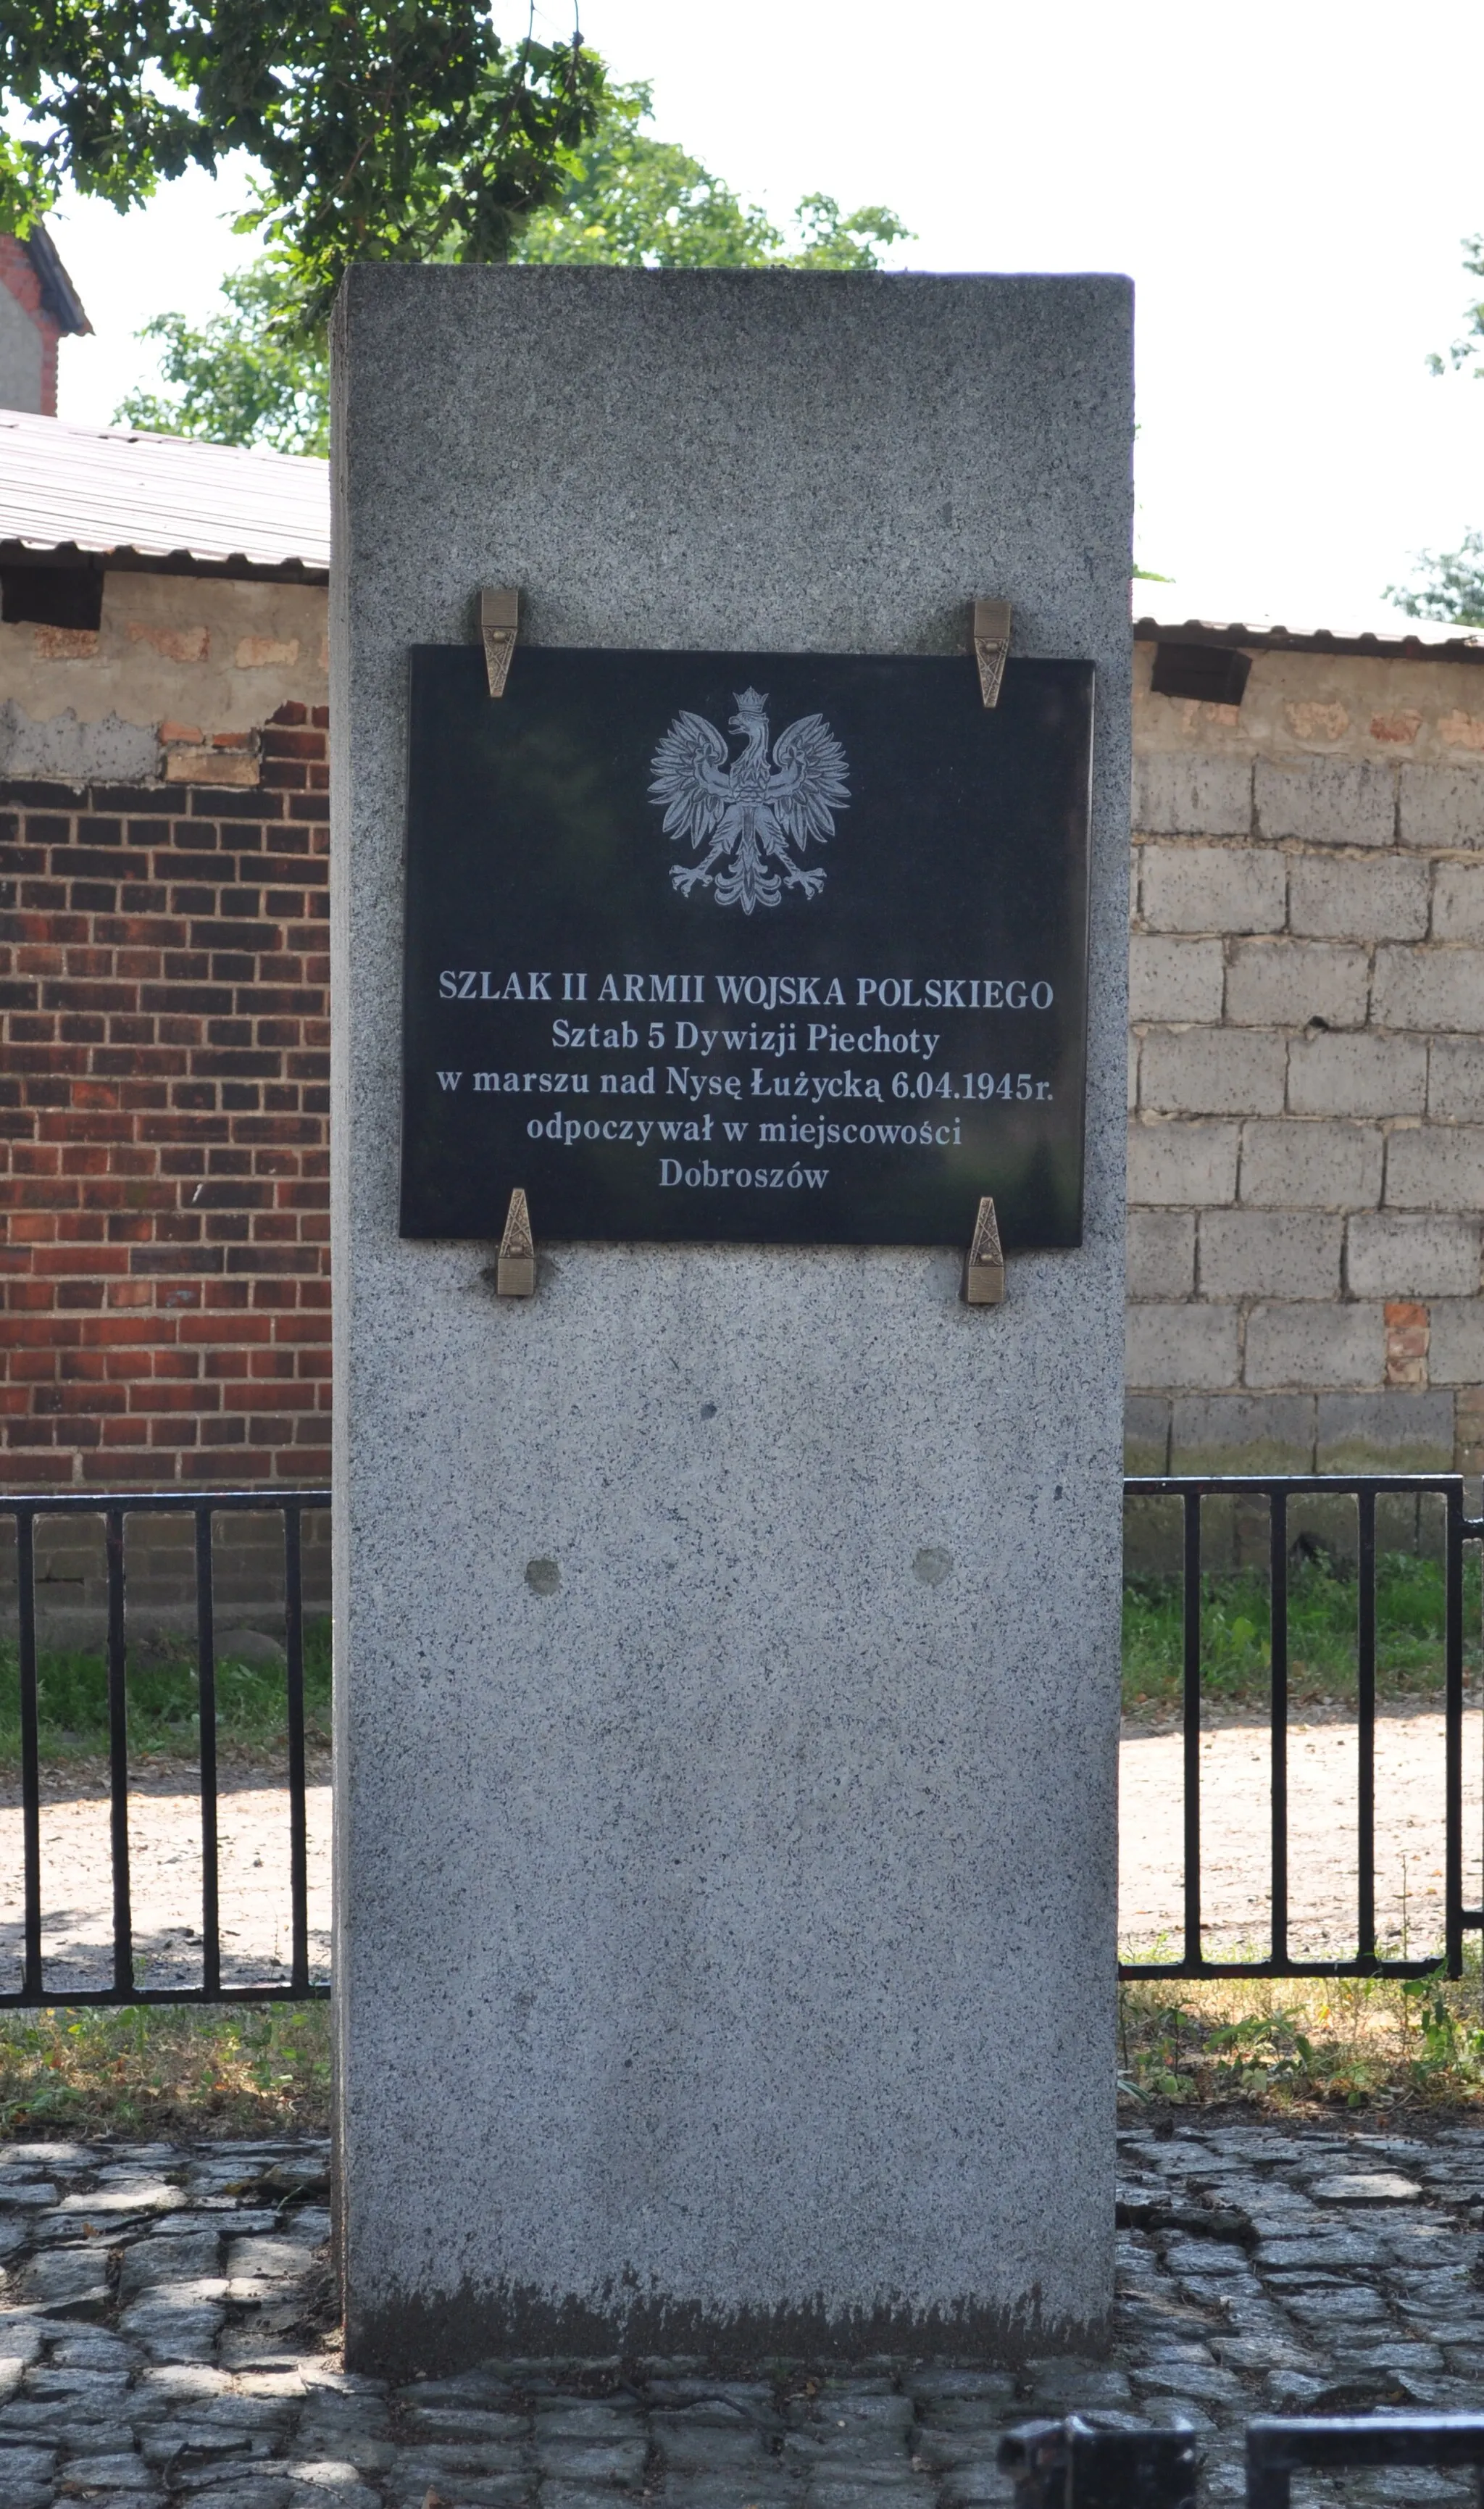 Photo showing: Monument in Dobroszów